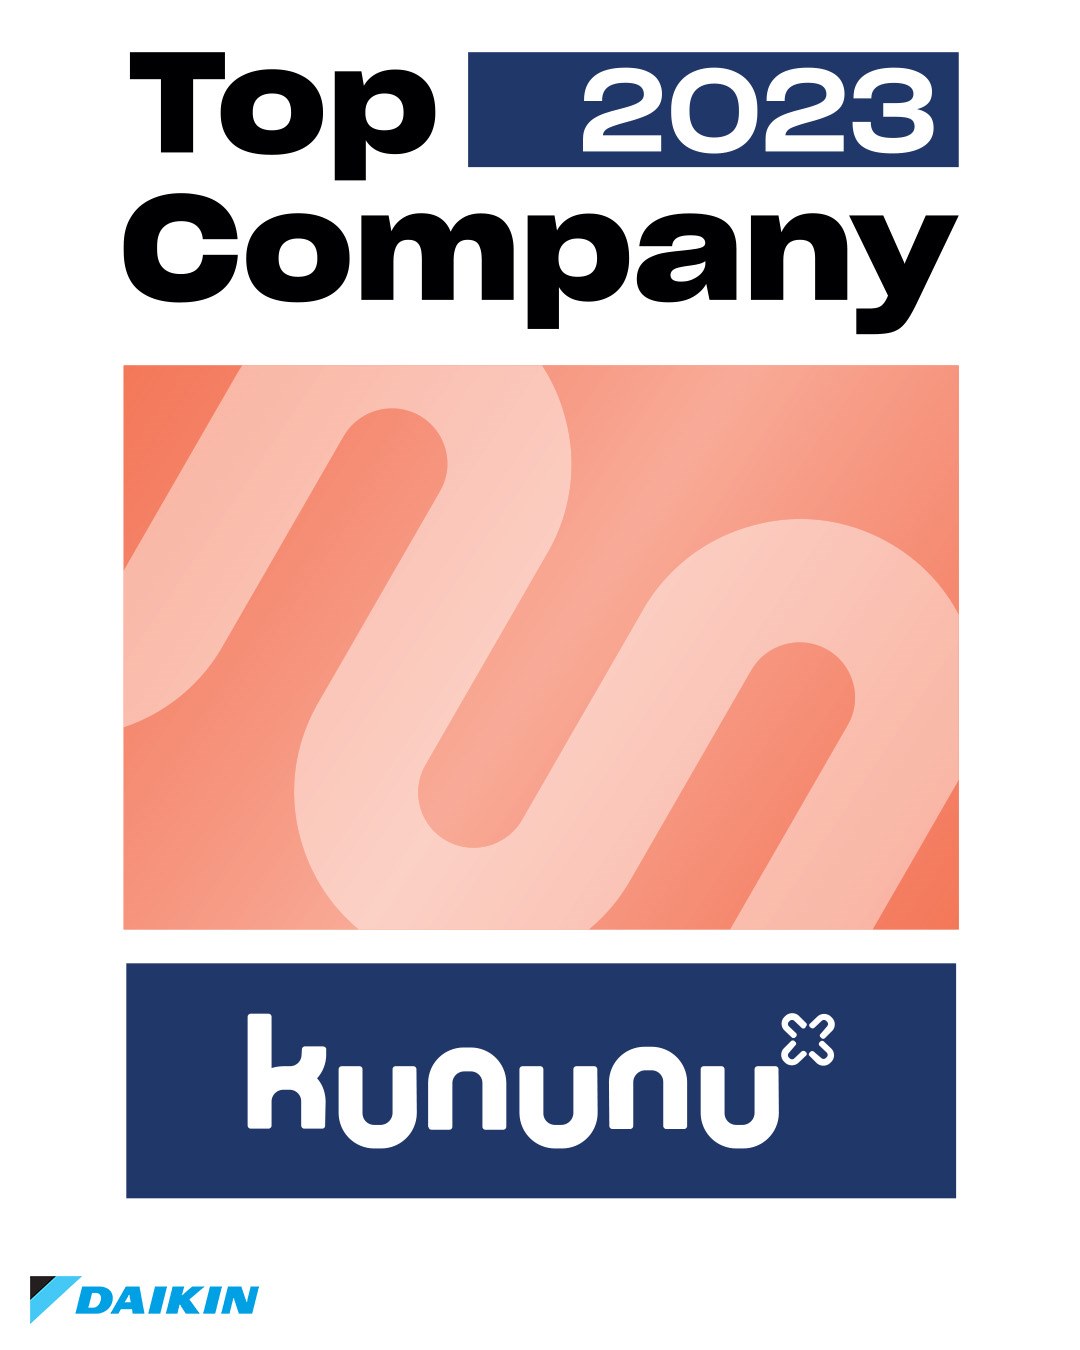 Daikin von kununu als Top Company 2023 ausgezeichnet